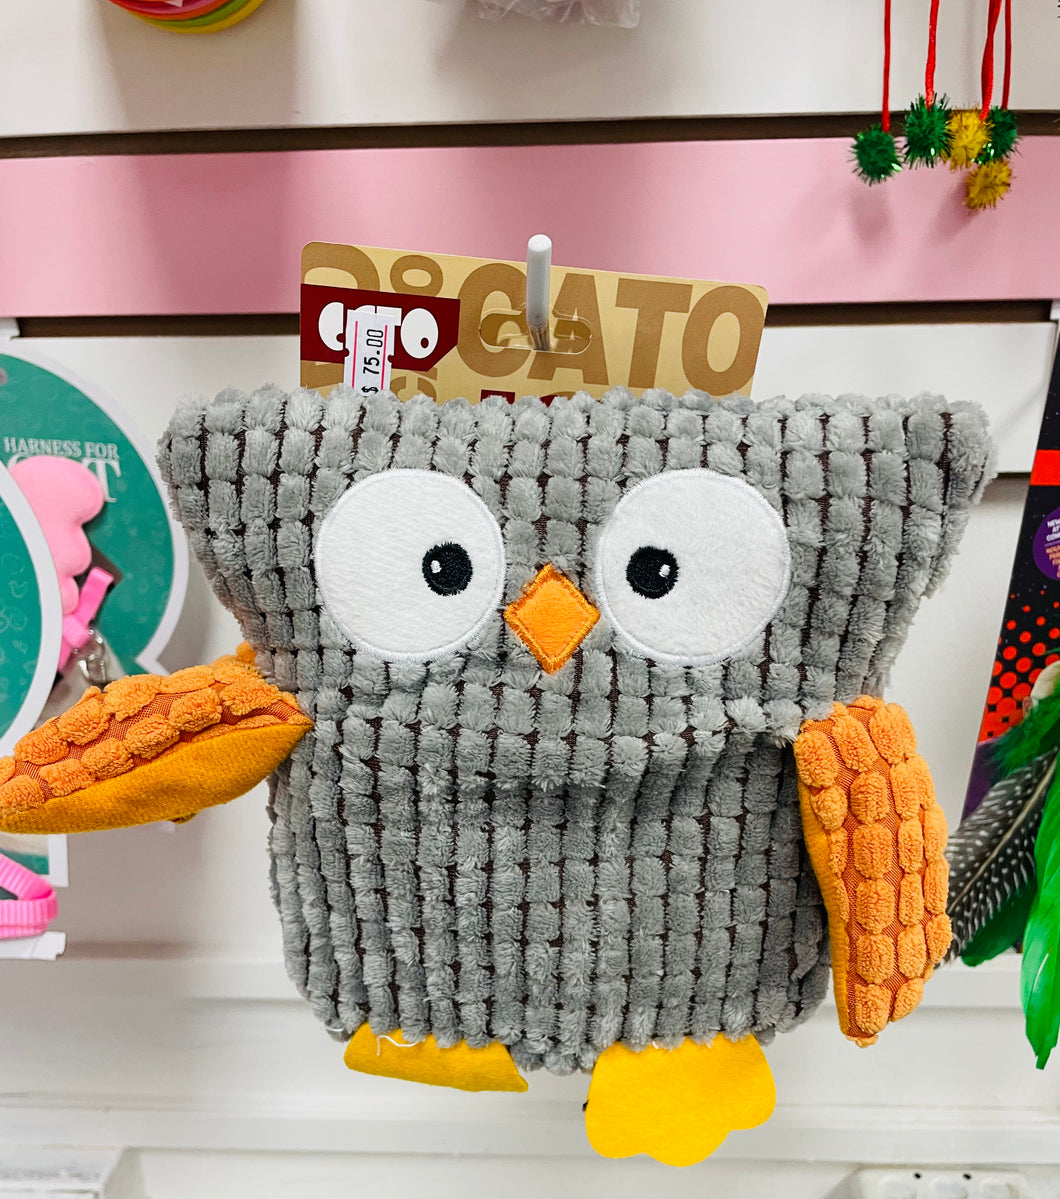 Stuffed Owl Toy